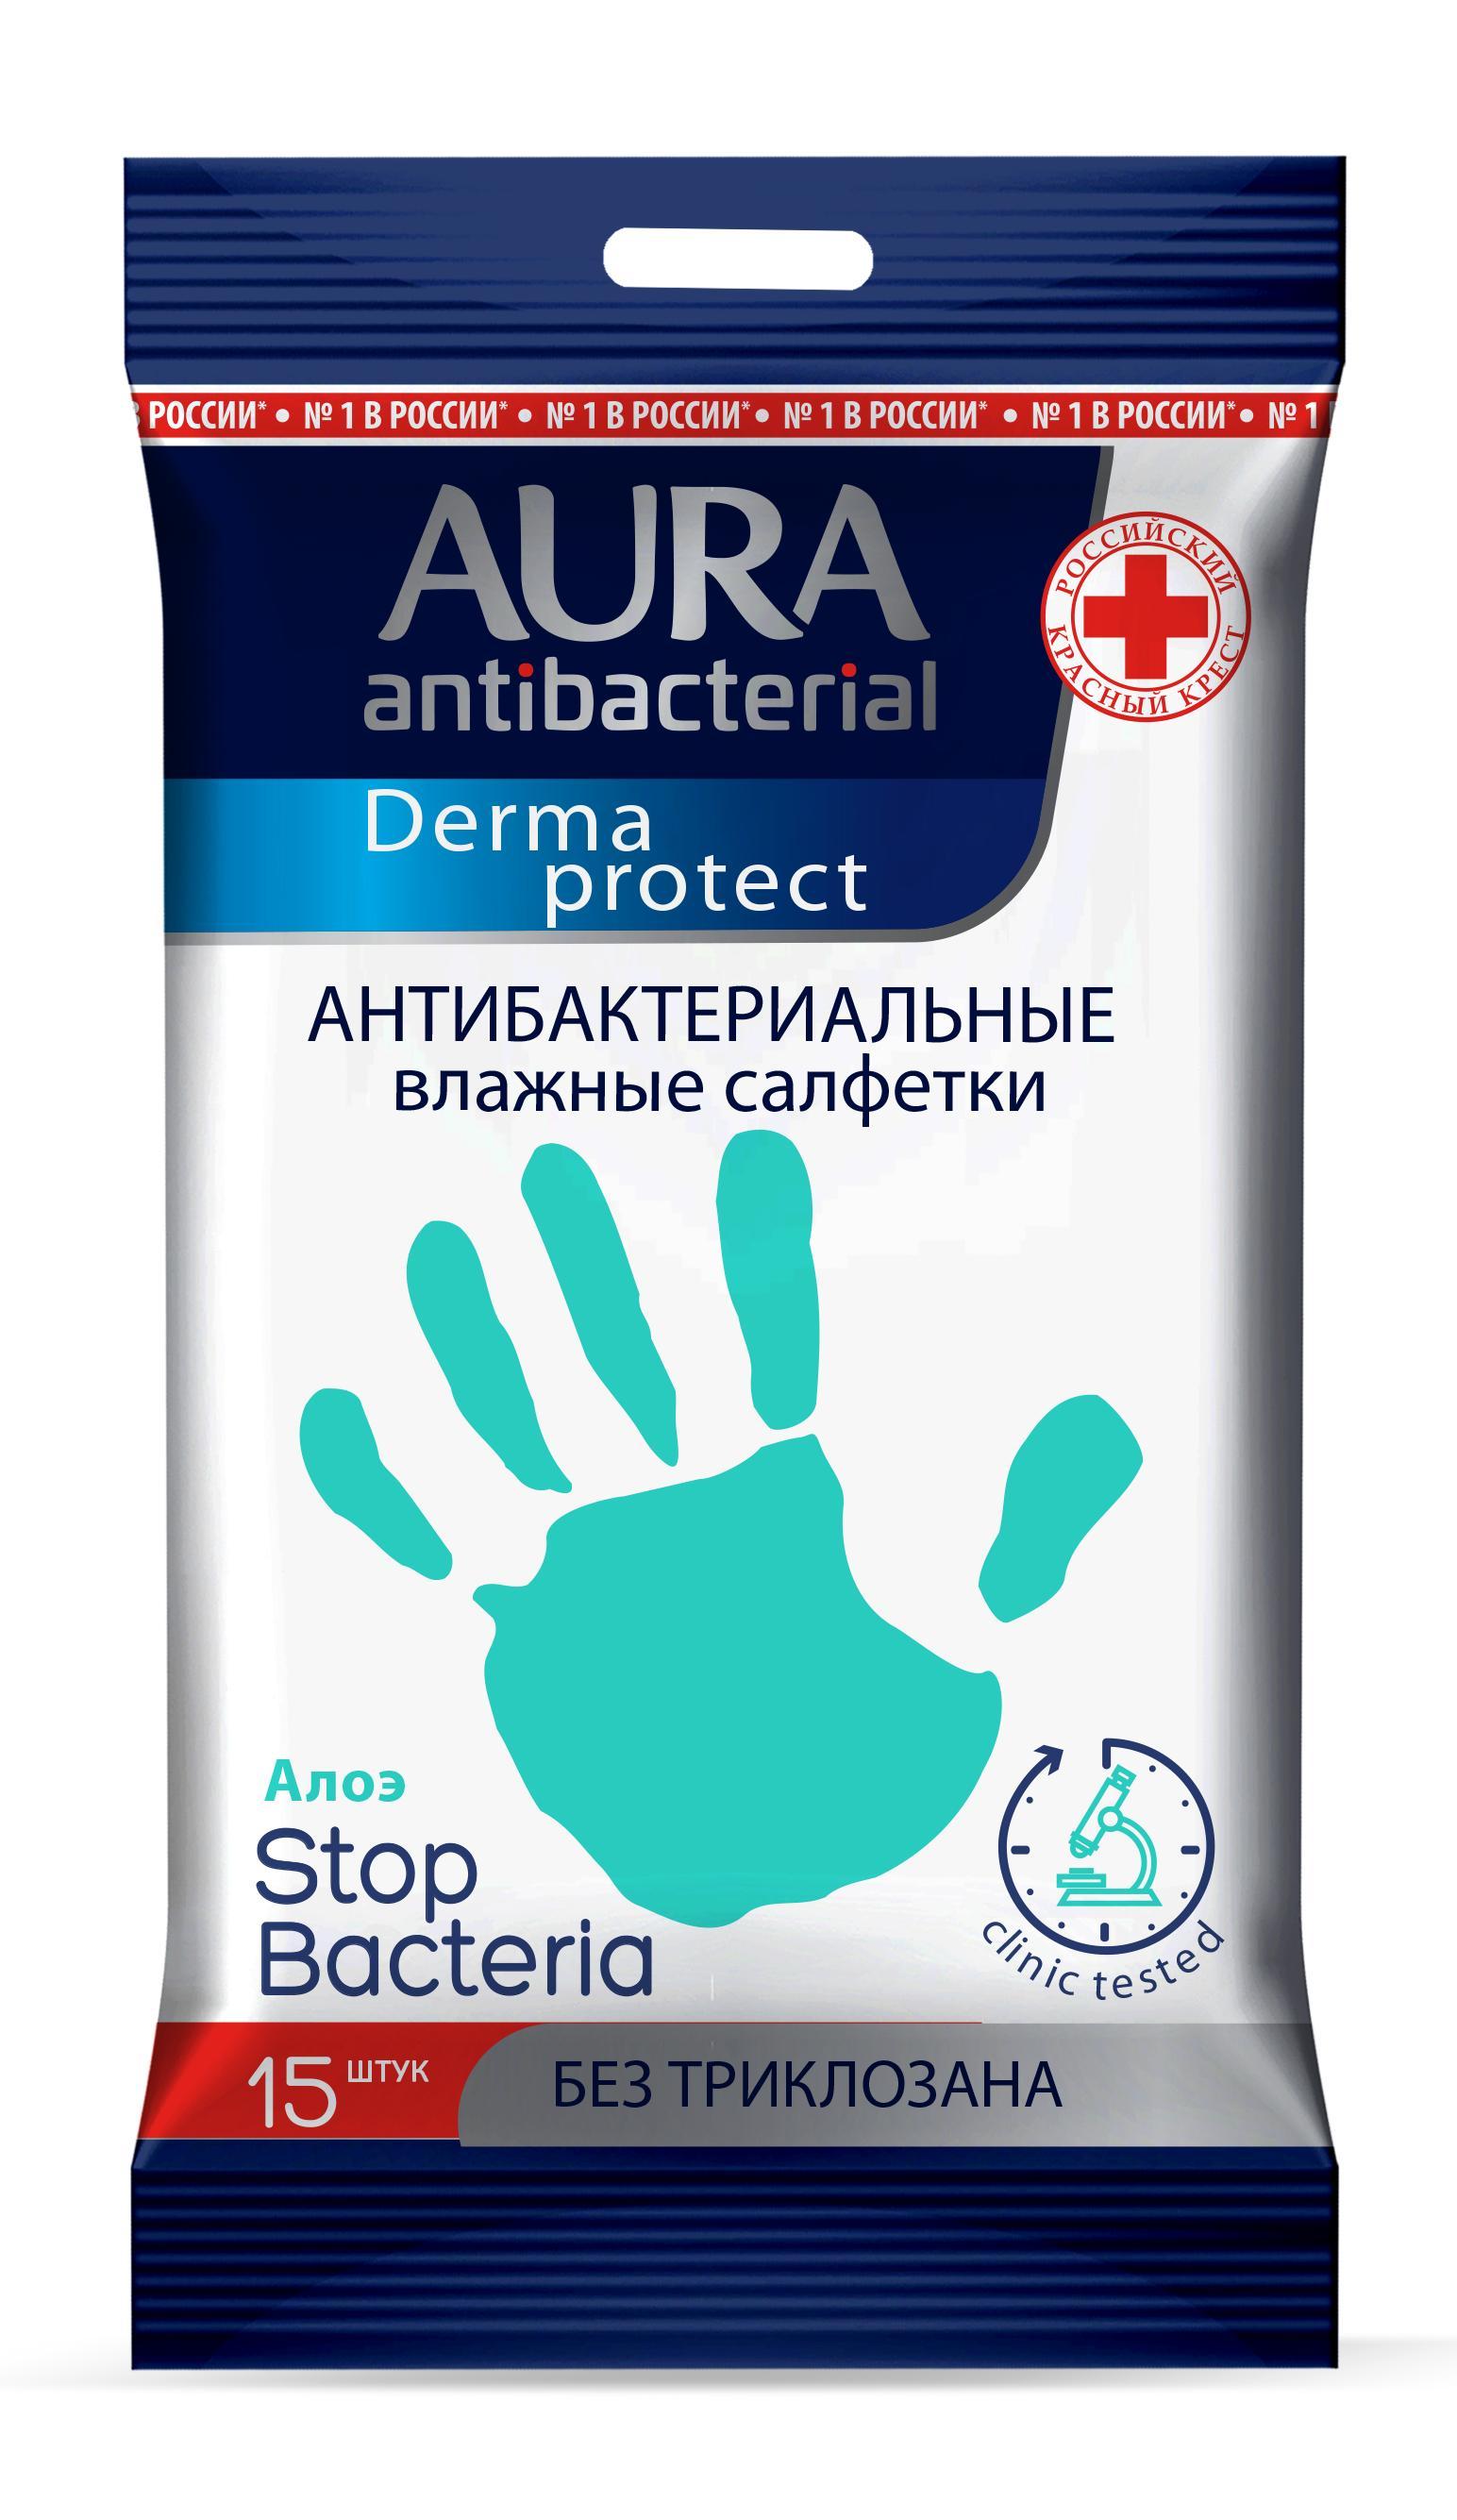 Влажные салфетки Aura Derma Protect антибактериальные алоэ 15 шт., флоу-пак